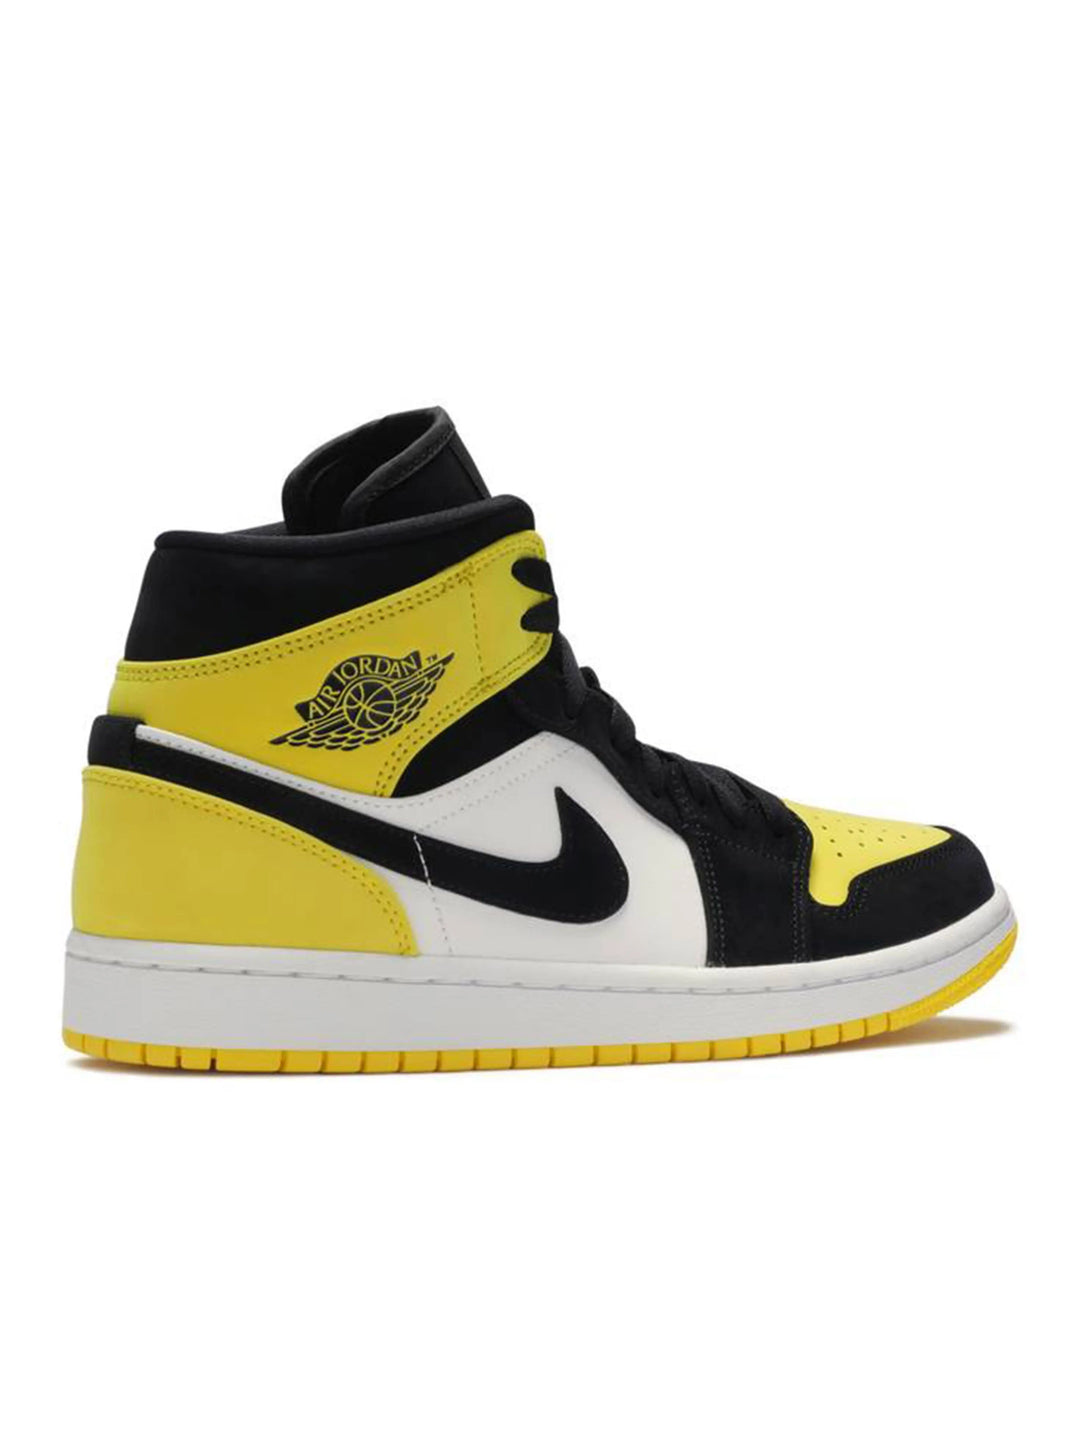 Nike Air Jordan 1 Mid Yellow Toe Black Jordan Brand